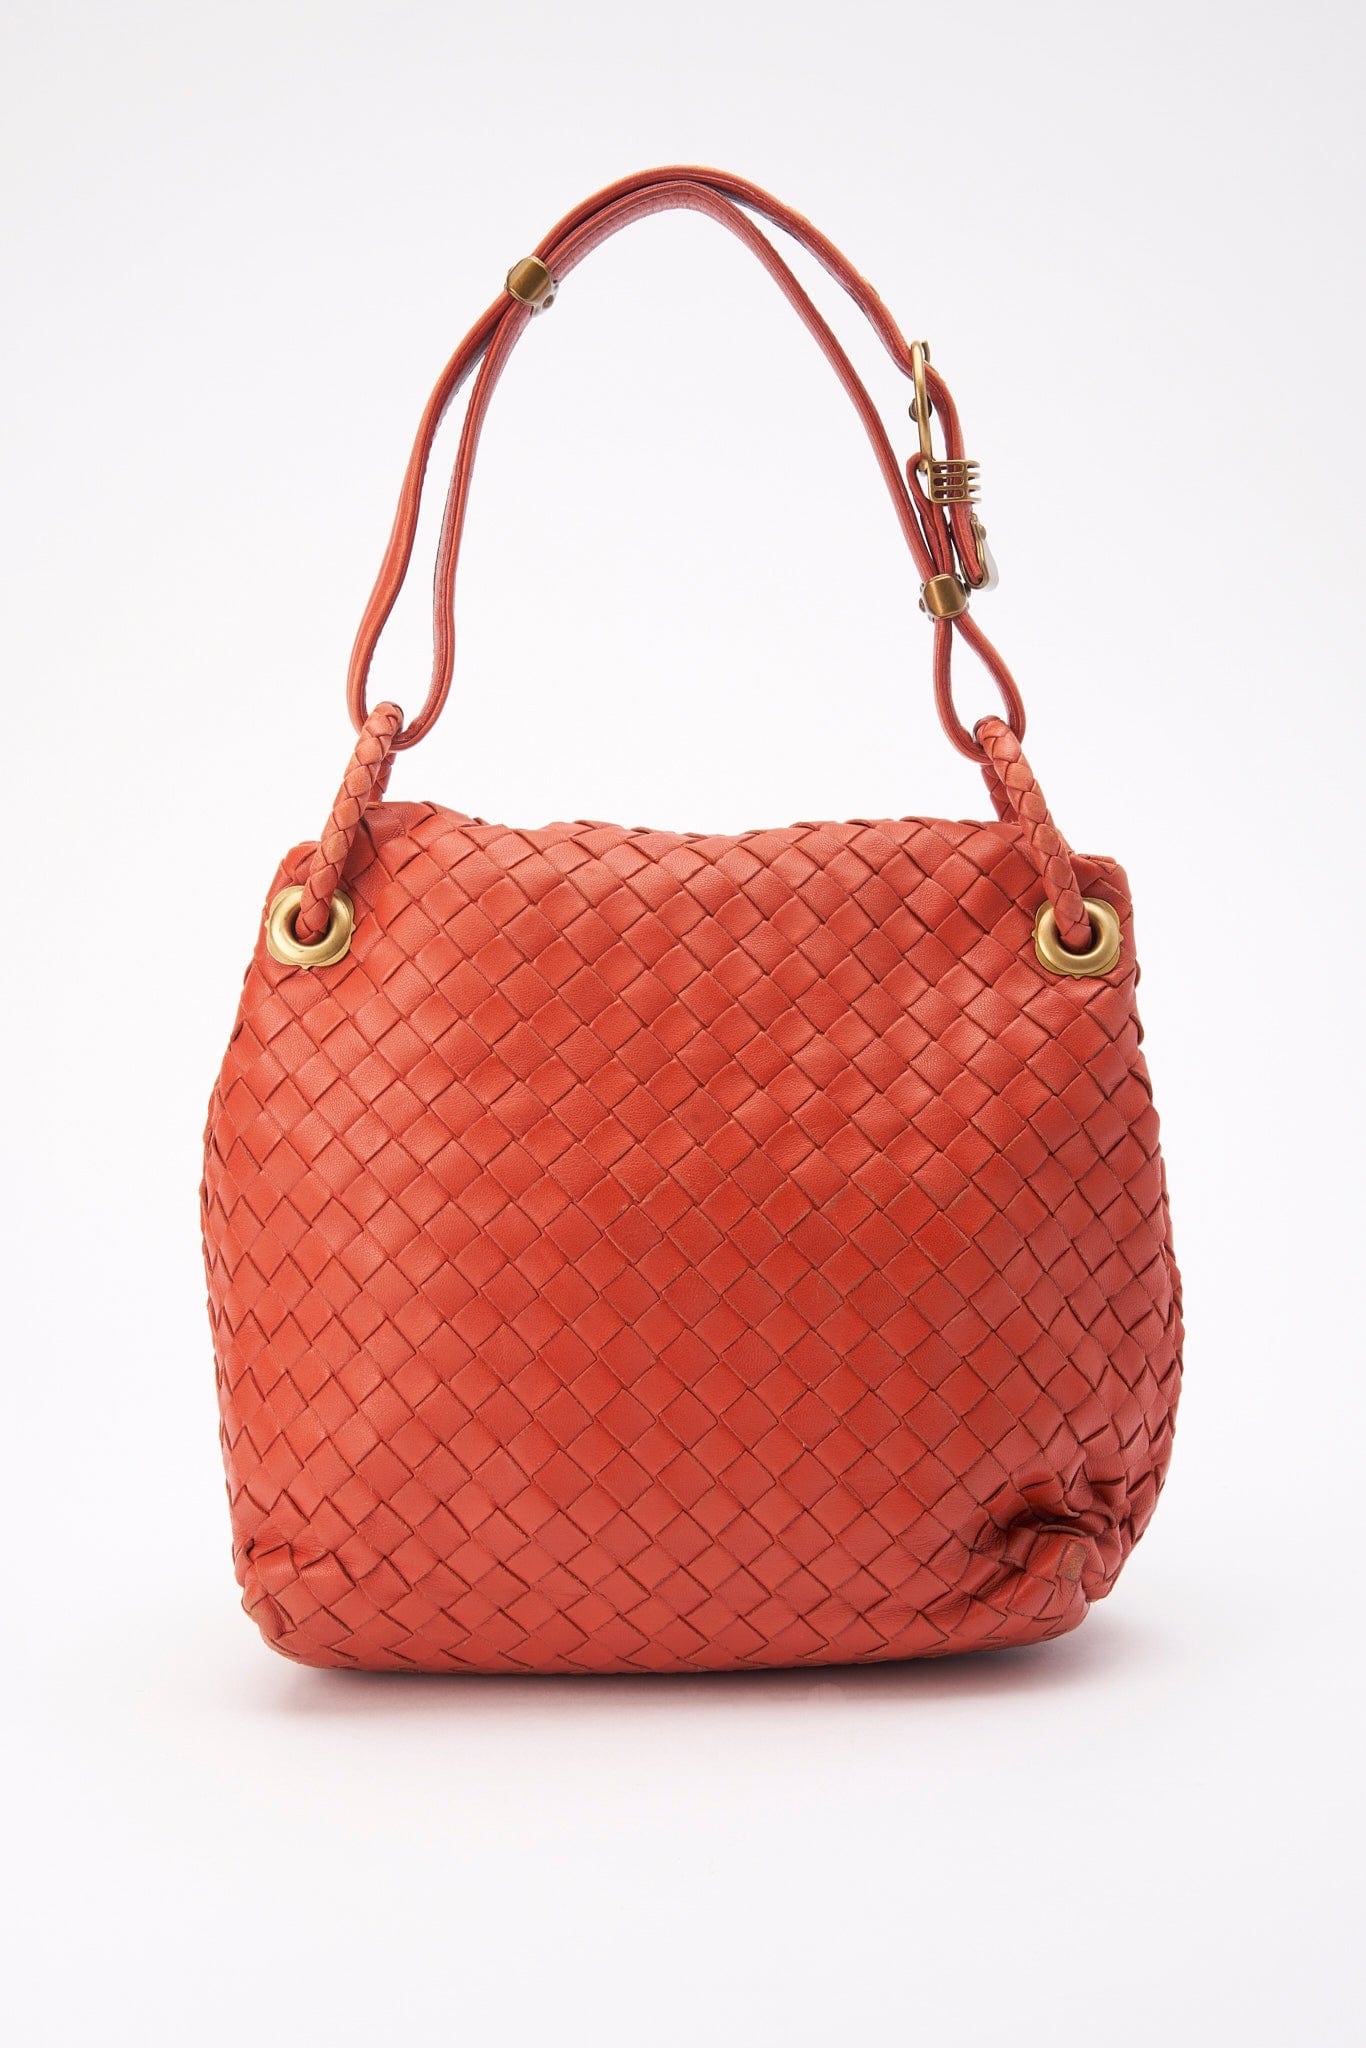 Vintage Bottega Veneta Red Intrecciato Leather Shoulder Bag